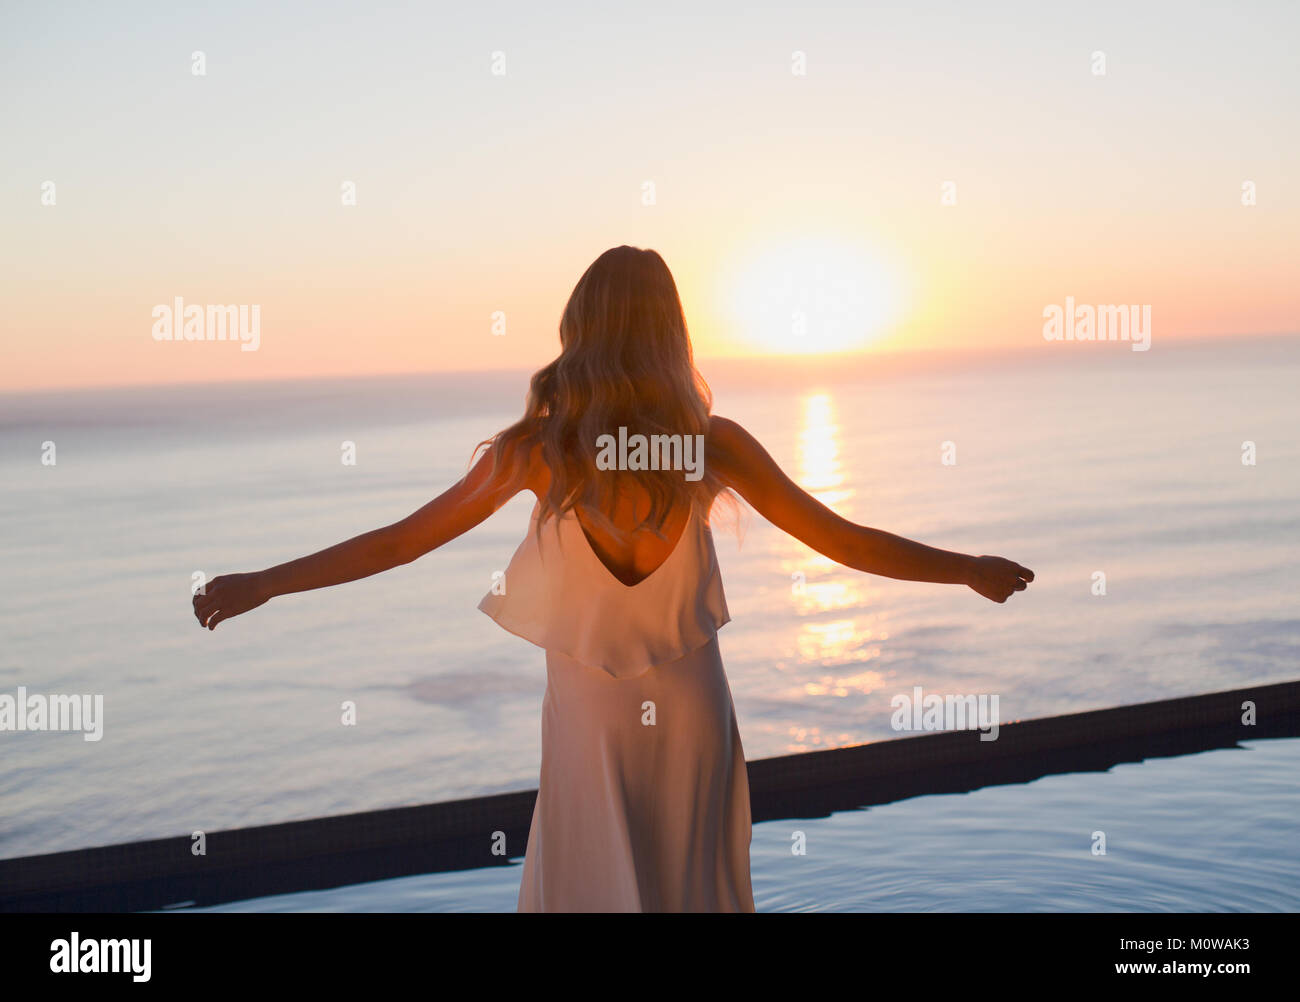 Frau mit ausgestreckten Armen gerade ruhige Aussicht auf den Sonnenuntergang über Meer Horizont Stockfoto